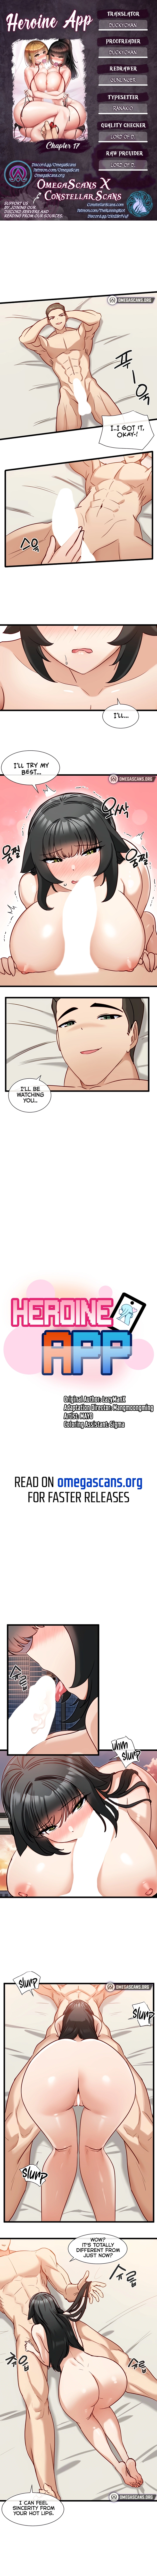 Heroine App image